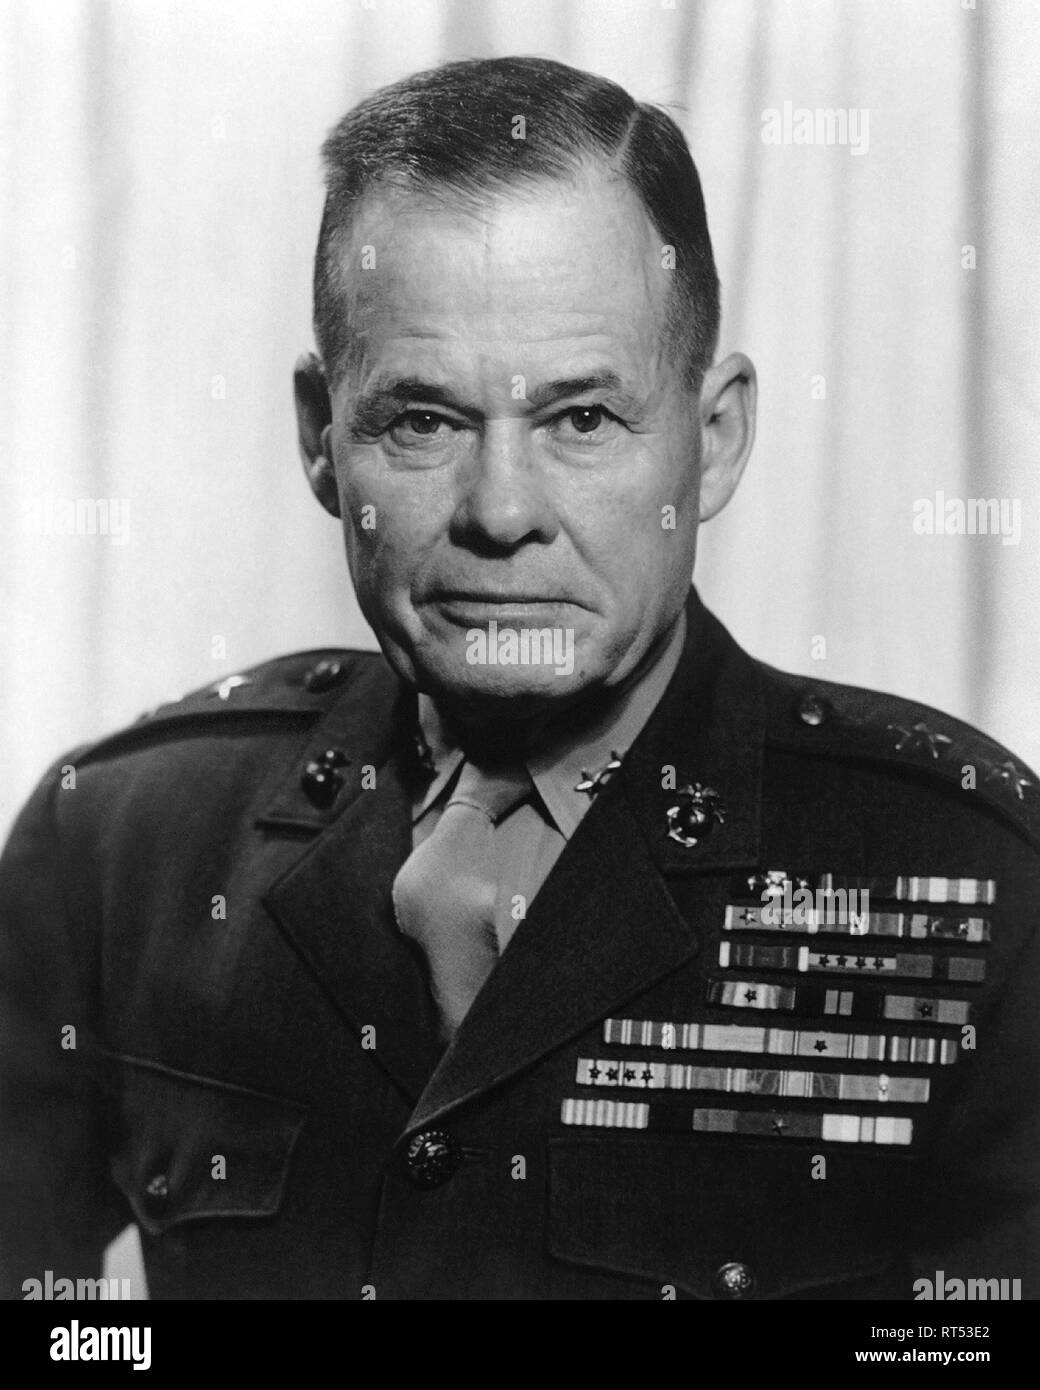 Portrait de l'histoire militaire américain, le Lieutenant-général Lewis Chesty puller. Banque D'Images